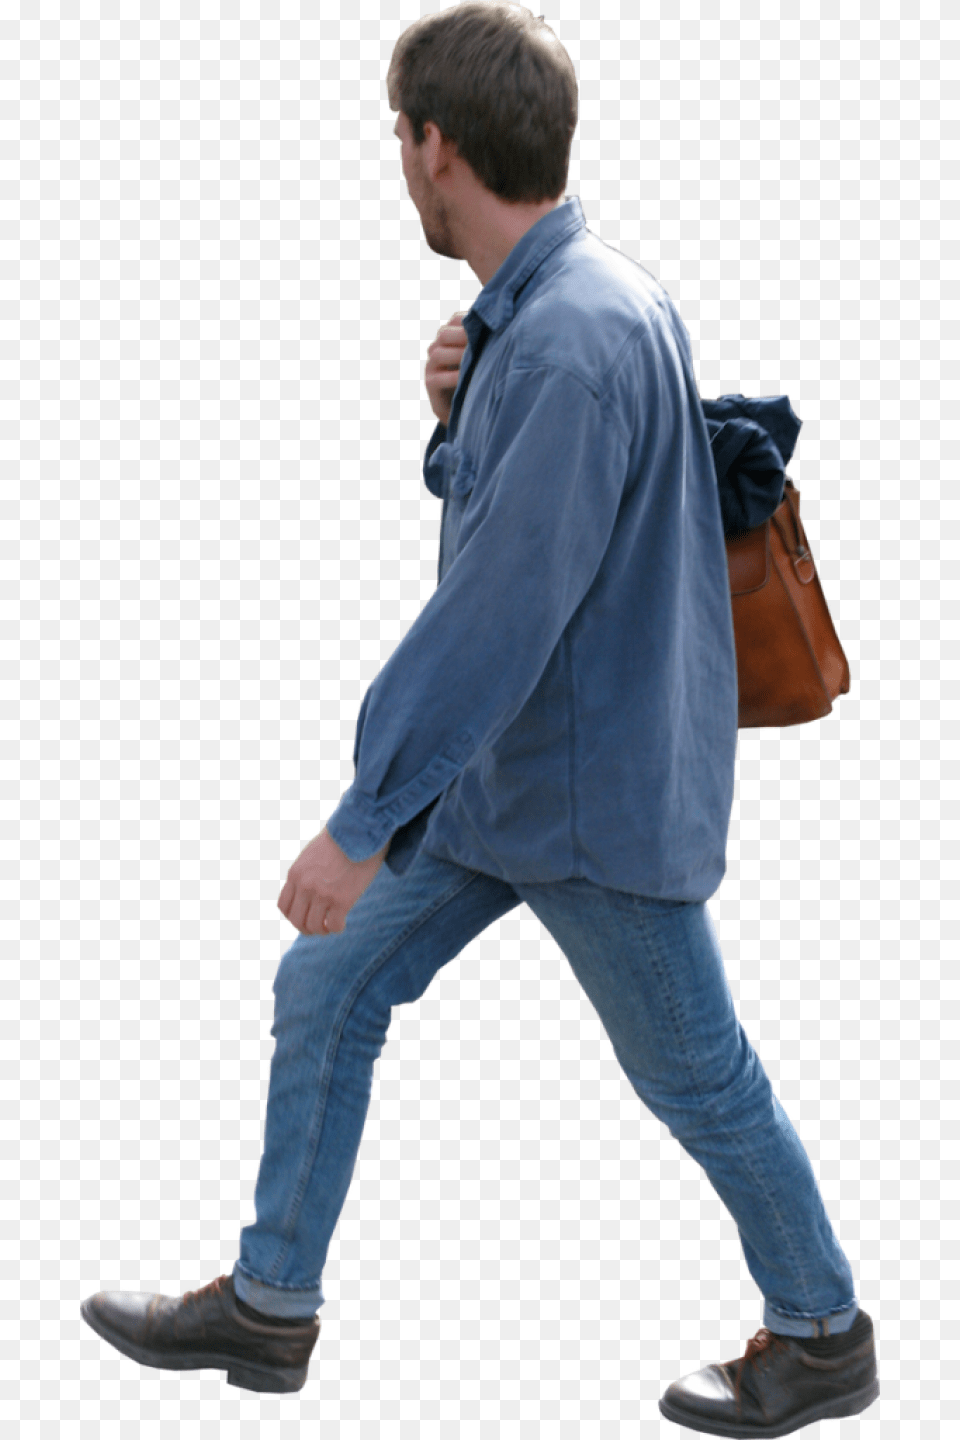 Walking Image, Jeans, Pants, Clothing, Bag Free Png